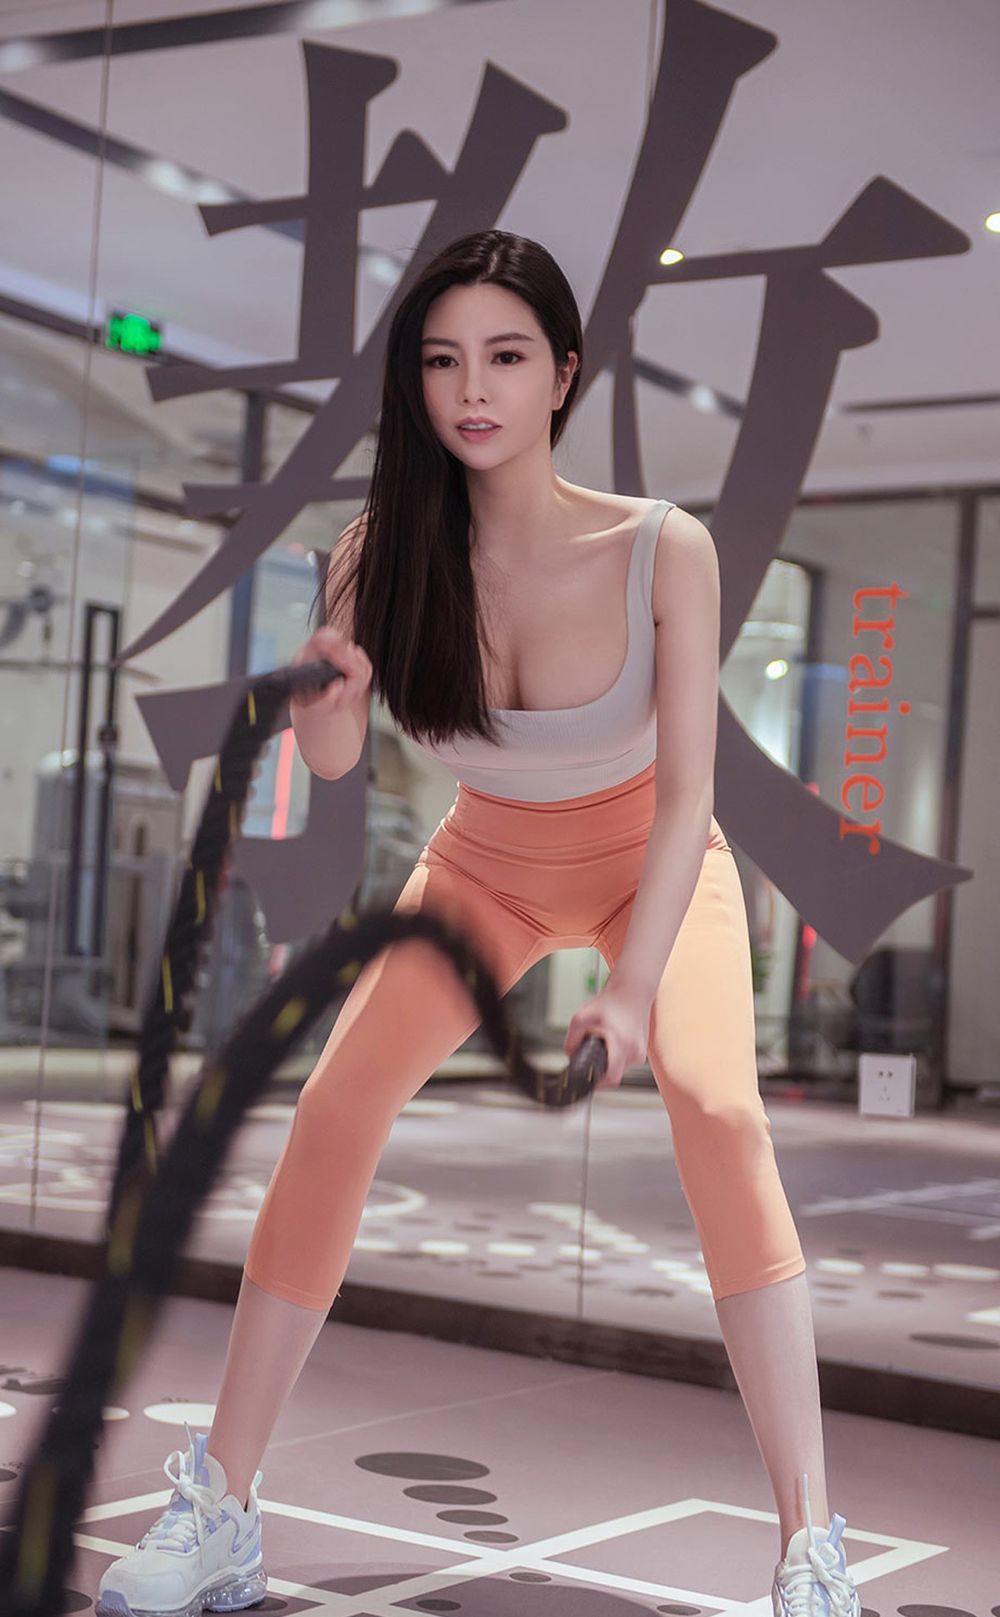 美女模特娜露Selena健身房高温运动主题性感写真